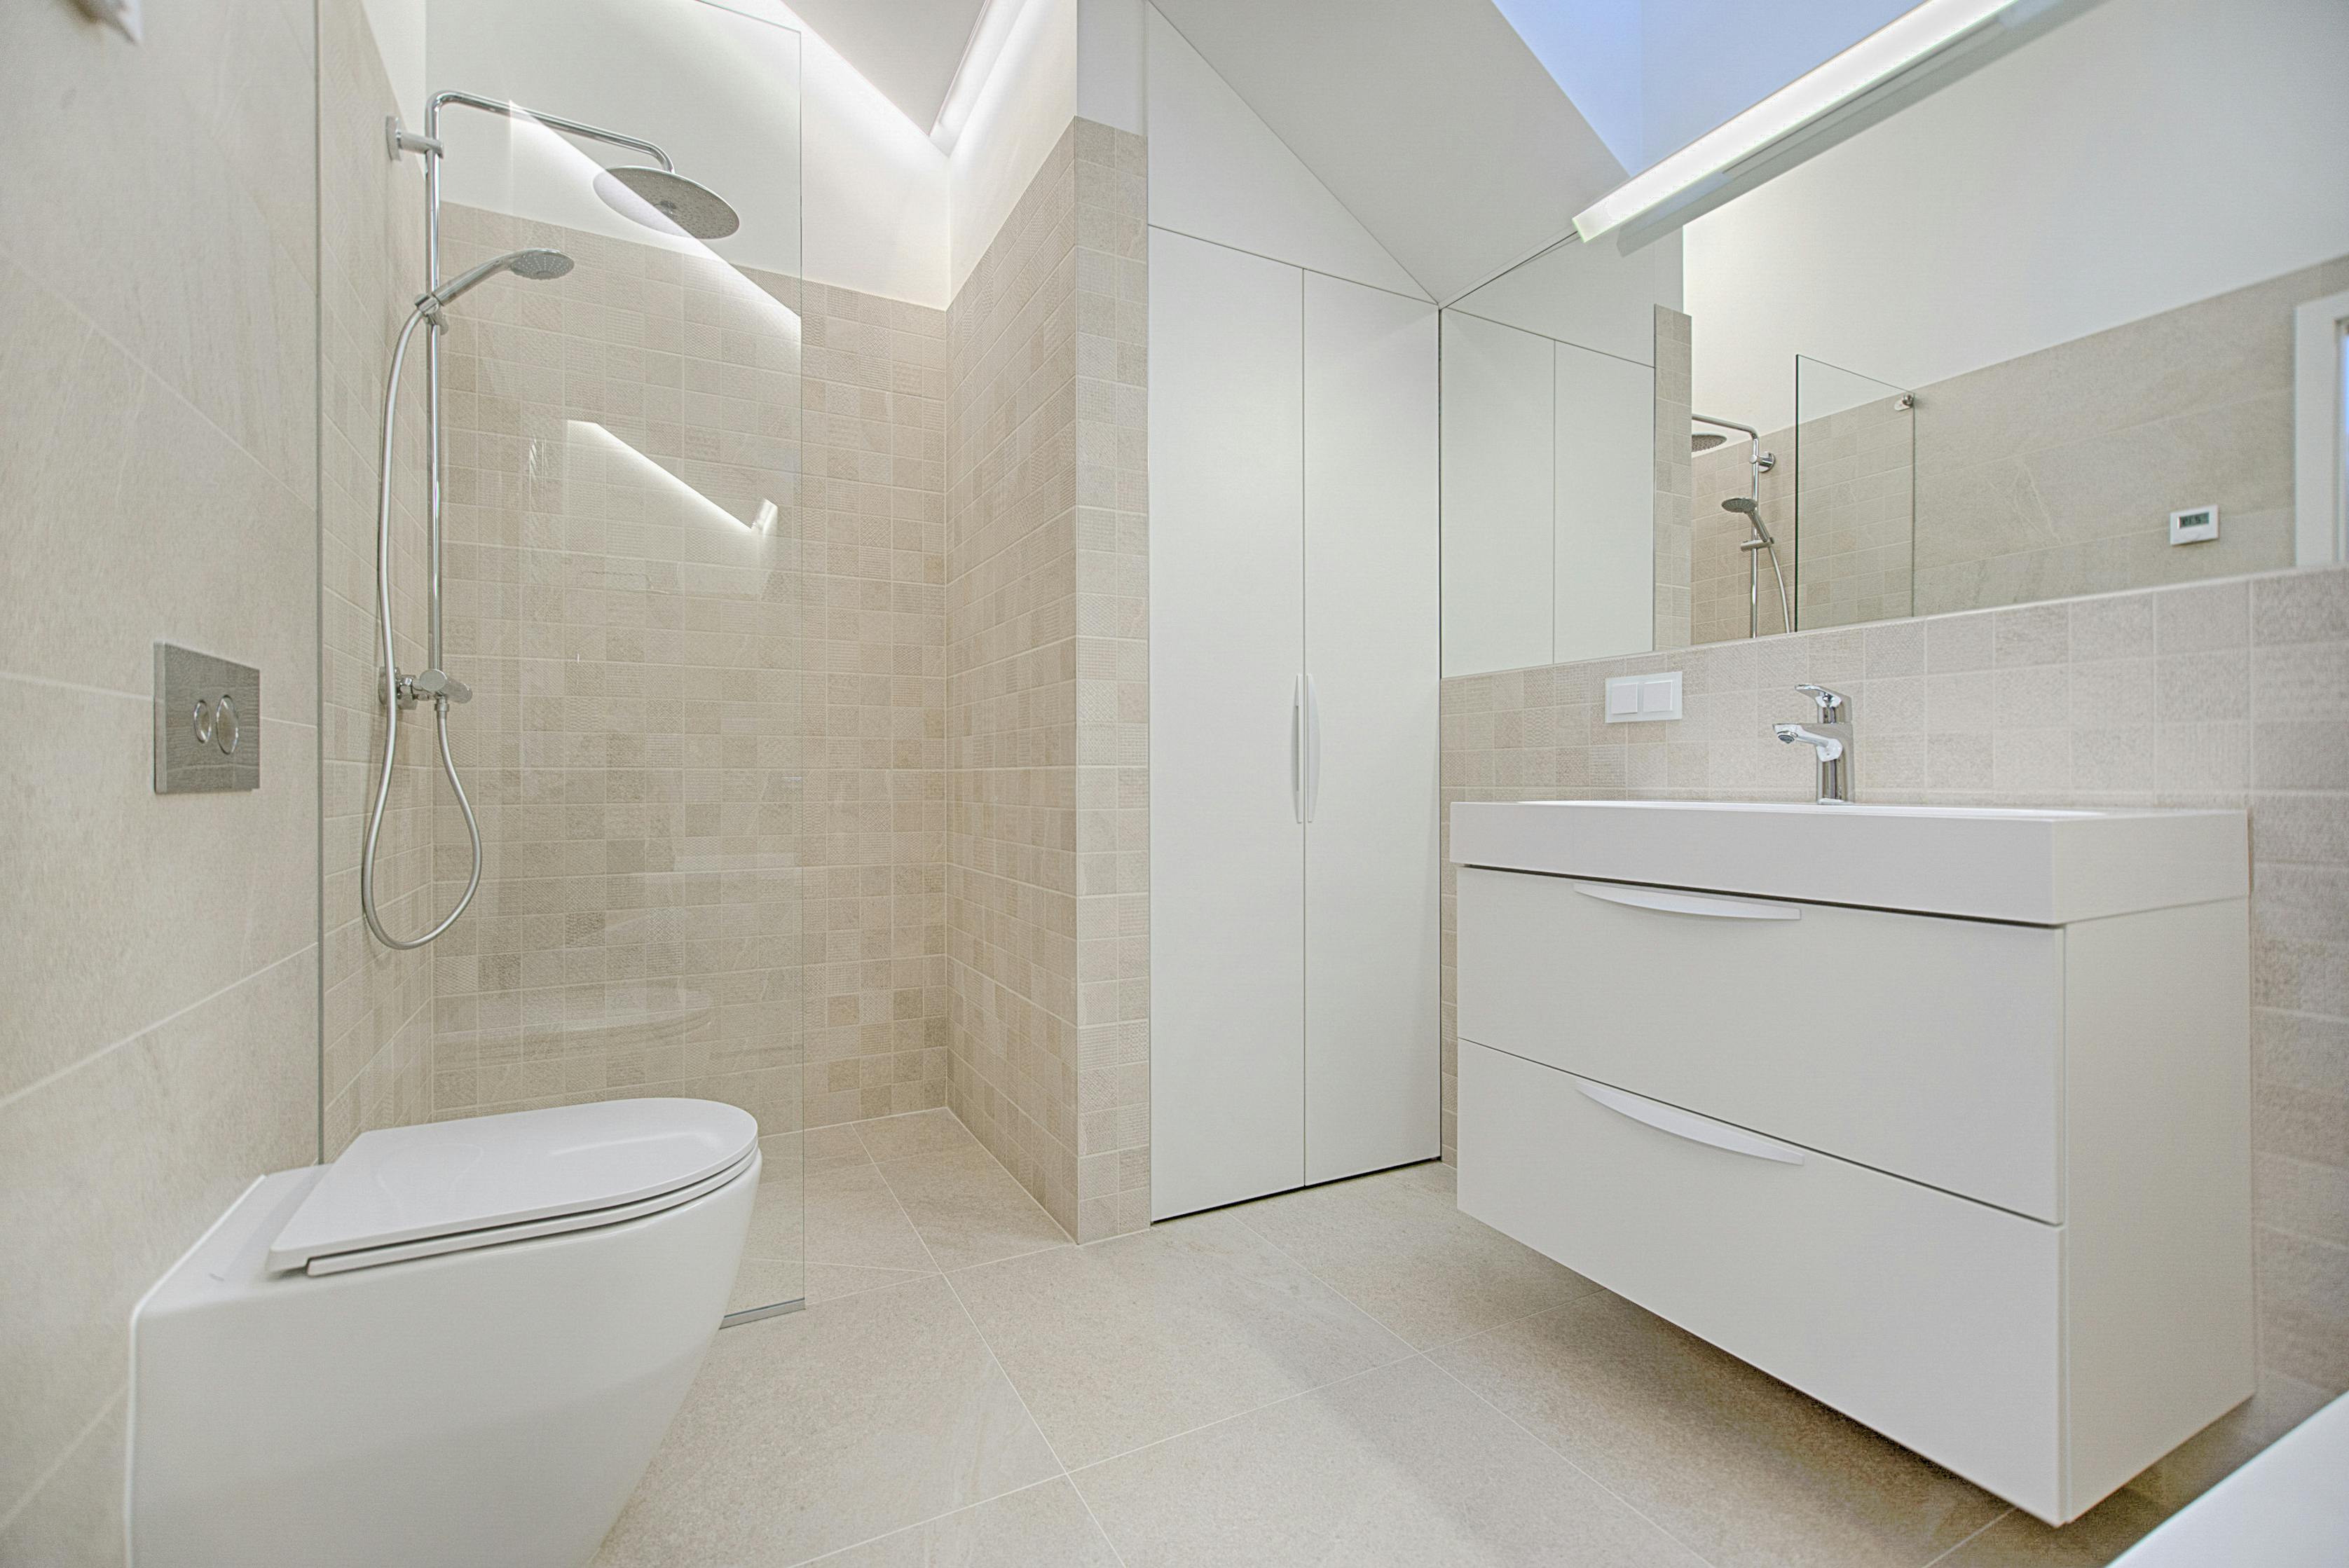 Kako izabrati wc šolju  za kupatilo u privatnom ili poslovnom prostoru?